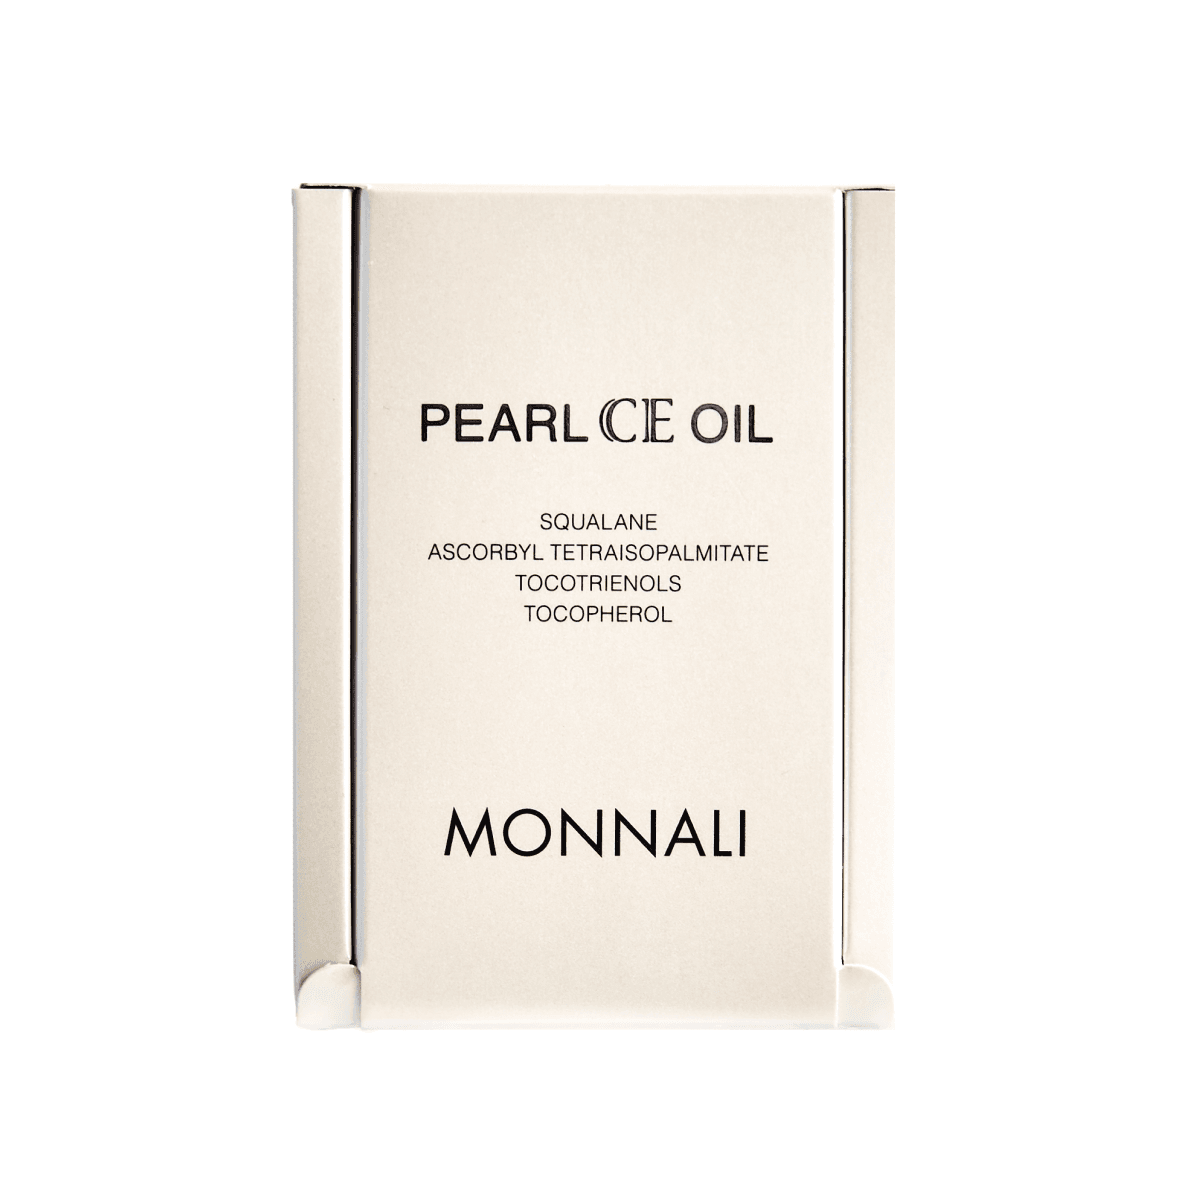 Pearl ce oil